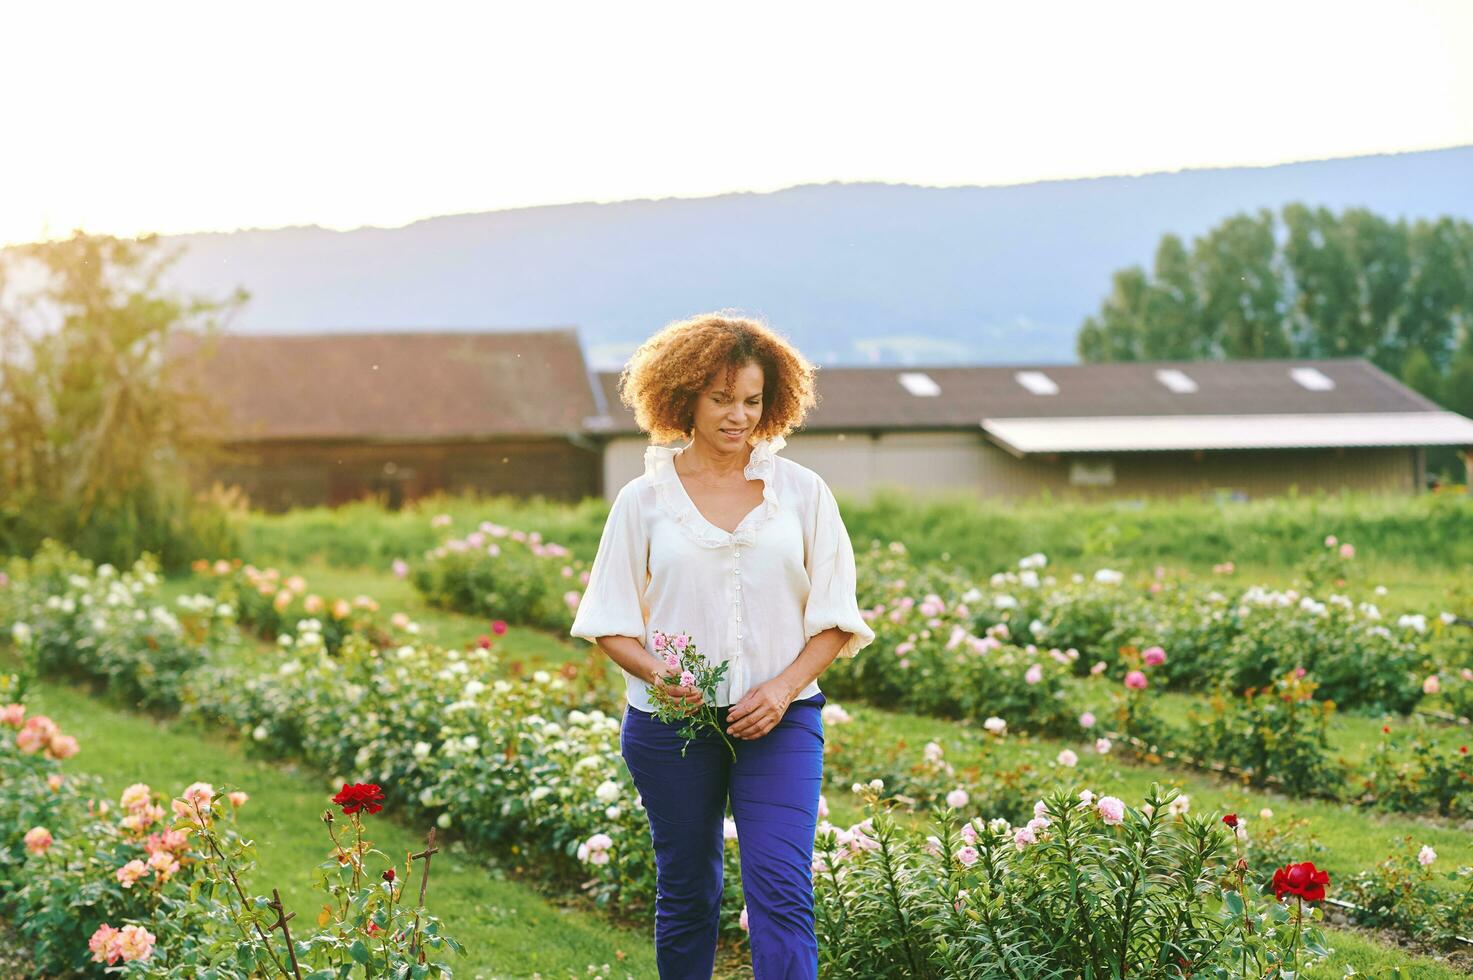 landsbygden livsstil, utomhus- porträtt av skön mitten ålder 50 - 55 år gammal kvinna njuter trevlig dag i blomma bruka trädgård foto